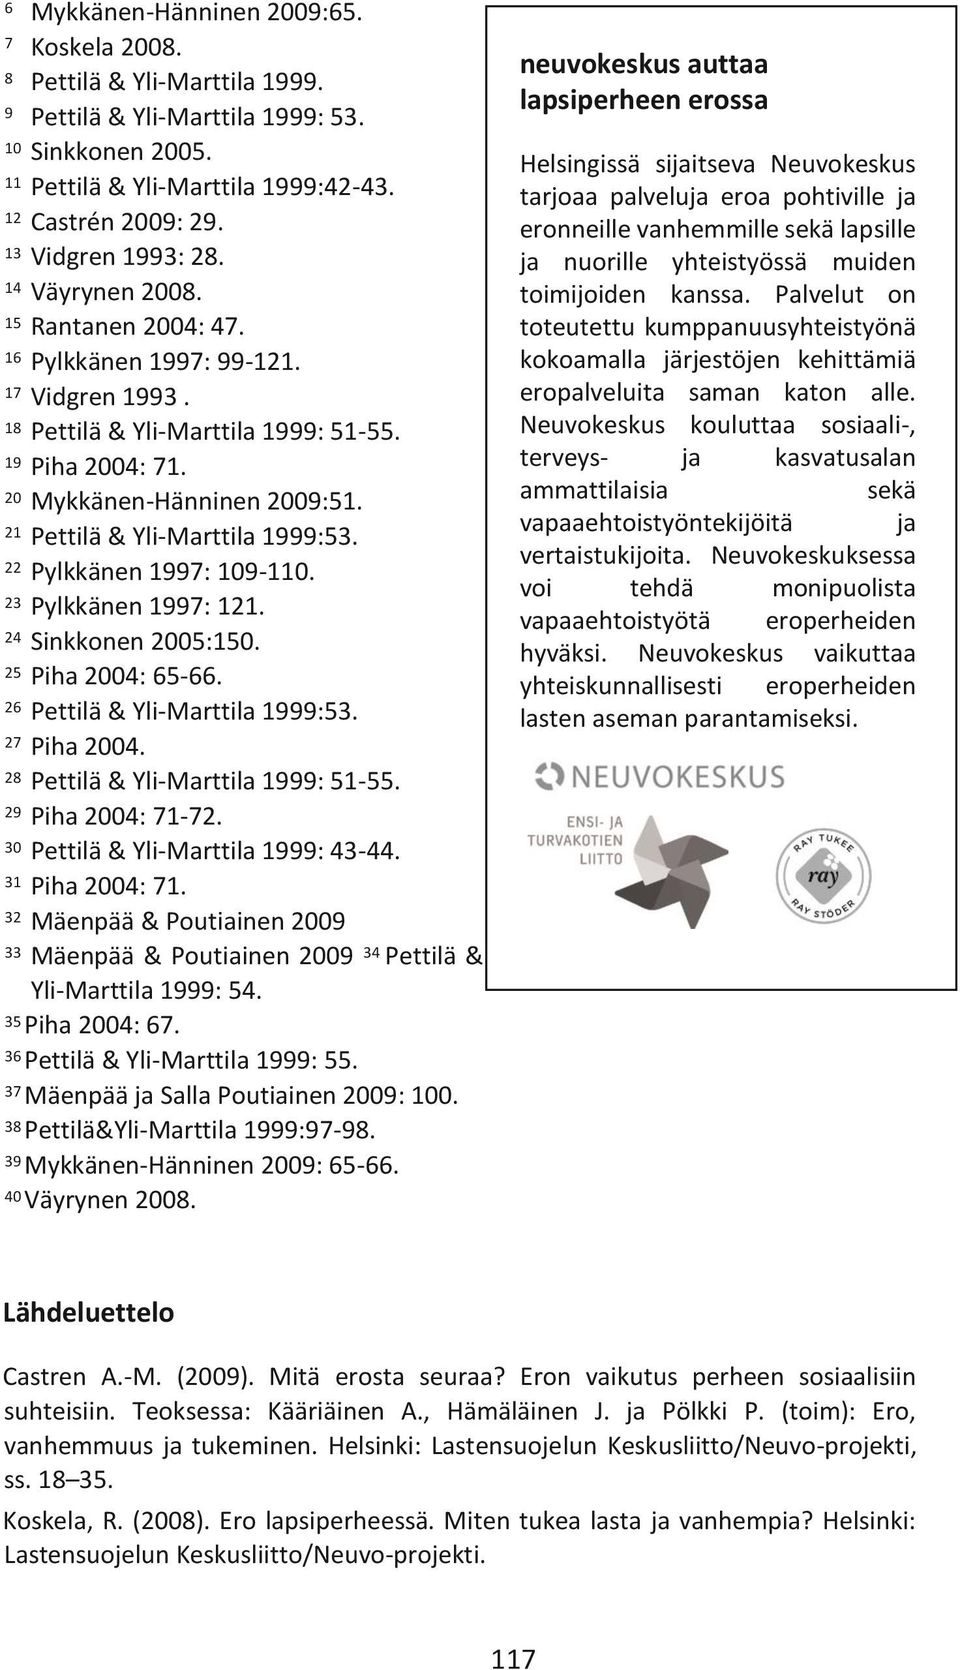 21 Pettilä & Yli-Marttila 1999:53. 22 Pylkkänen 1997: 109-110. 23 Pylkkänen 1997: 121. 24 Sinkkonen 2005:150. 25 Piha 2004: 65-66. 26 Pettilä & Yli-Marttila 1999:53. 27 Piha 2004.